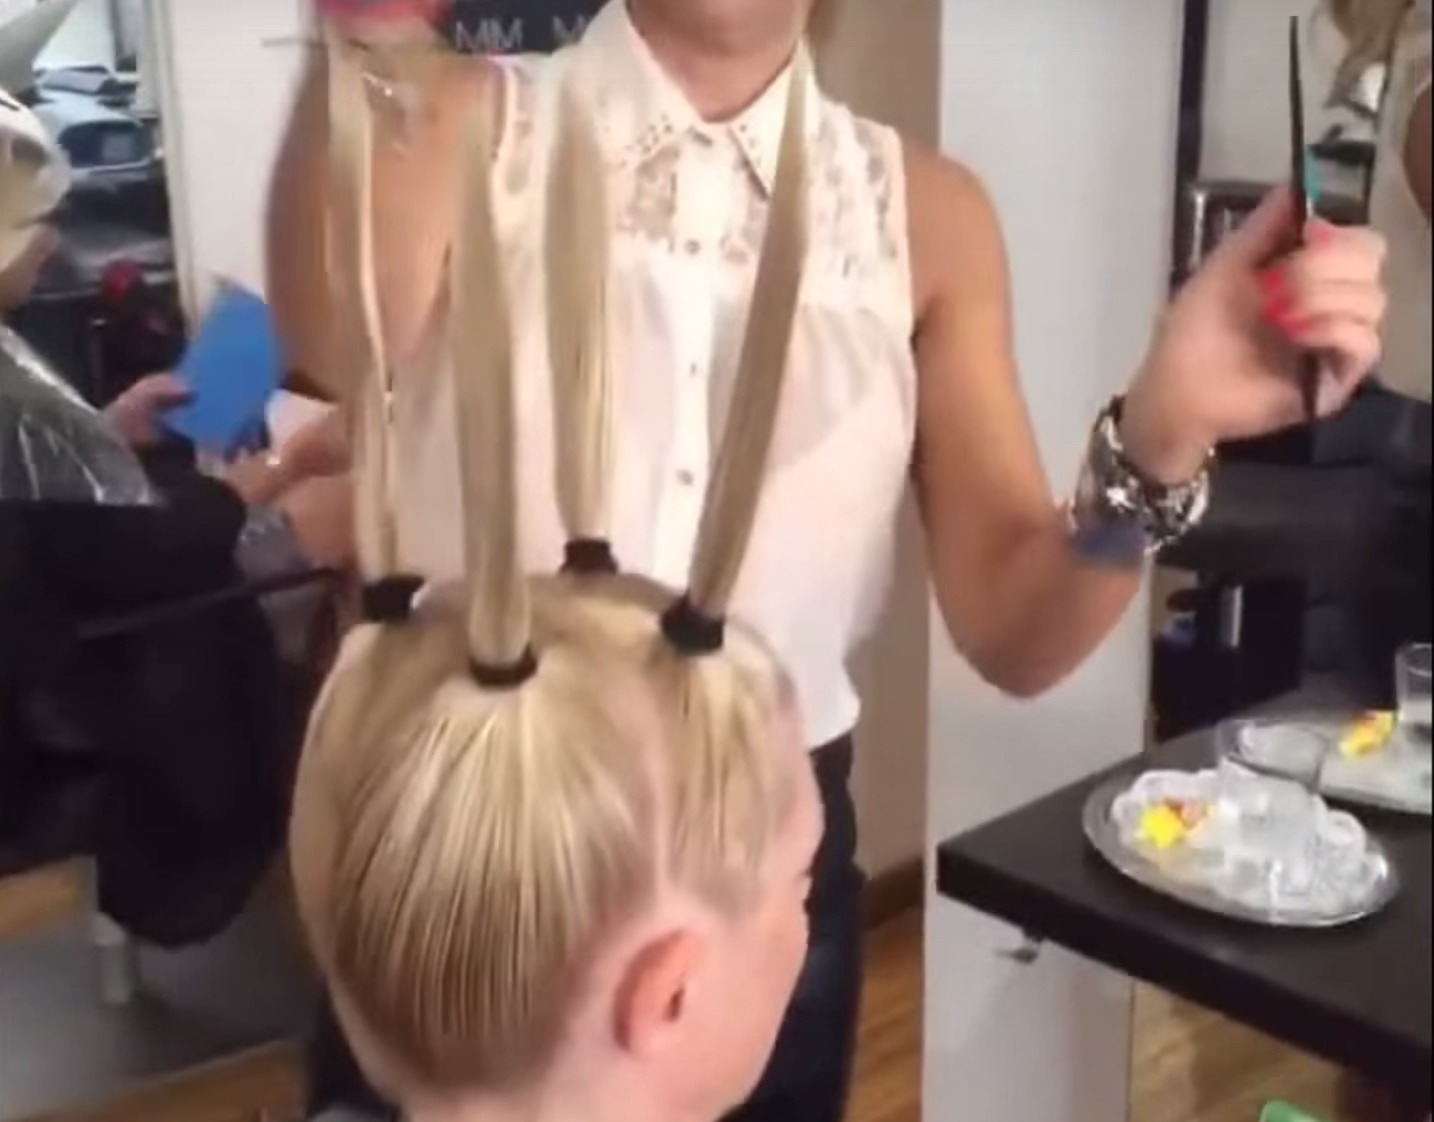 Tagliare capelli, la tecnica esilarante che fa impazzire il web (VIDEO)